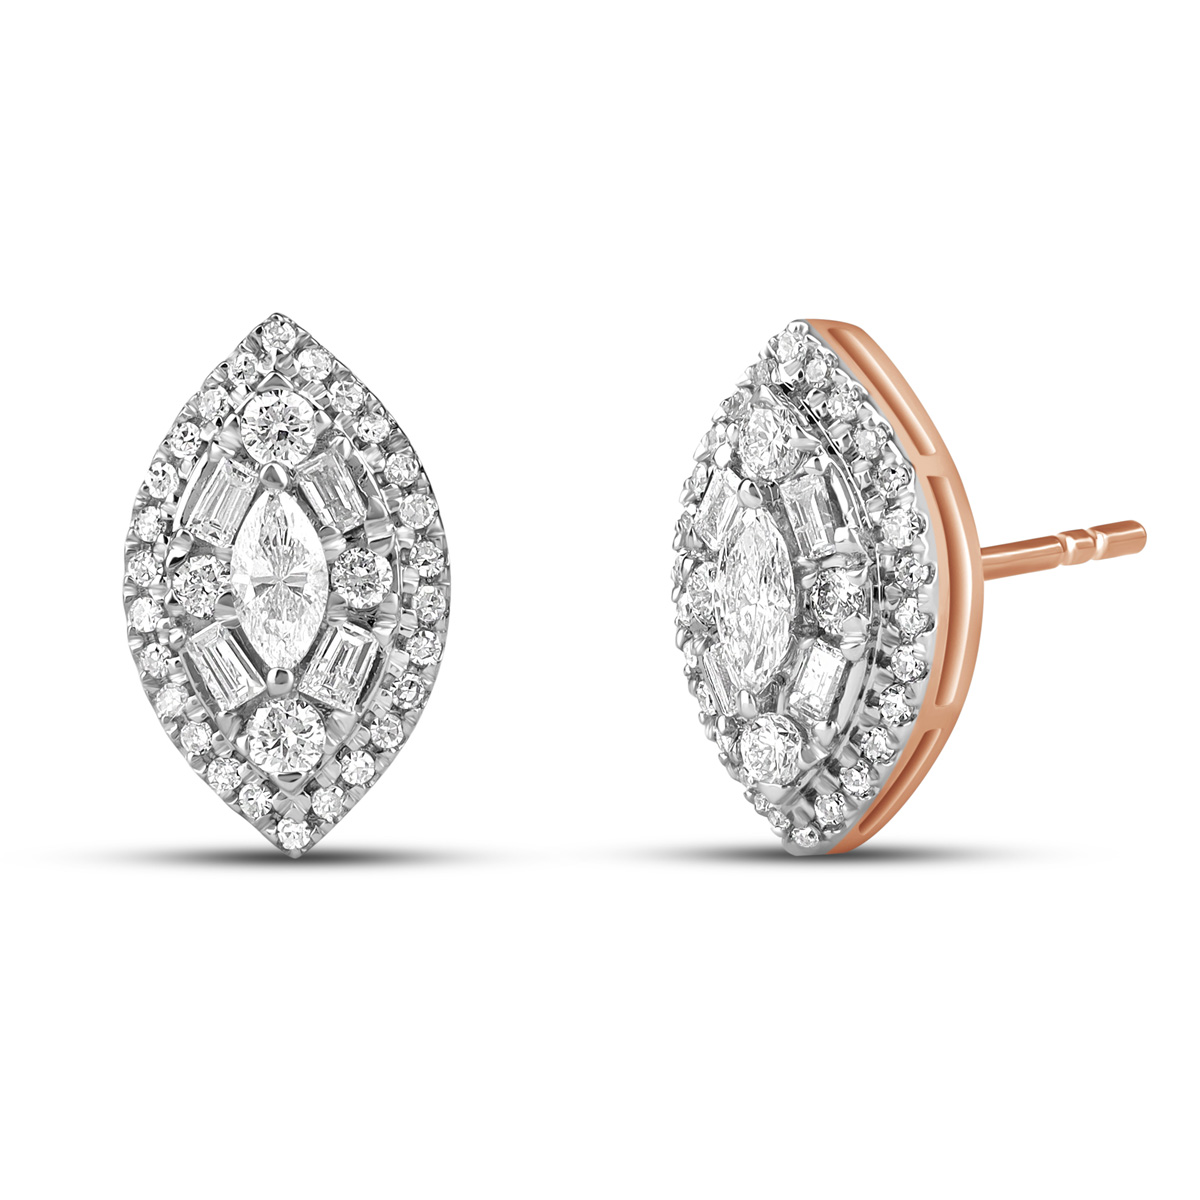 HE52502WWD4RZ
14K rose gold fancy cut diamond earrings